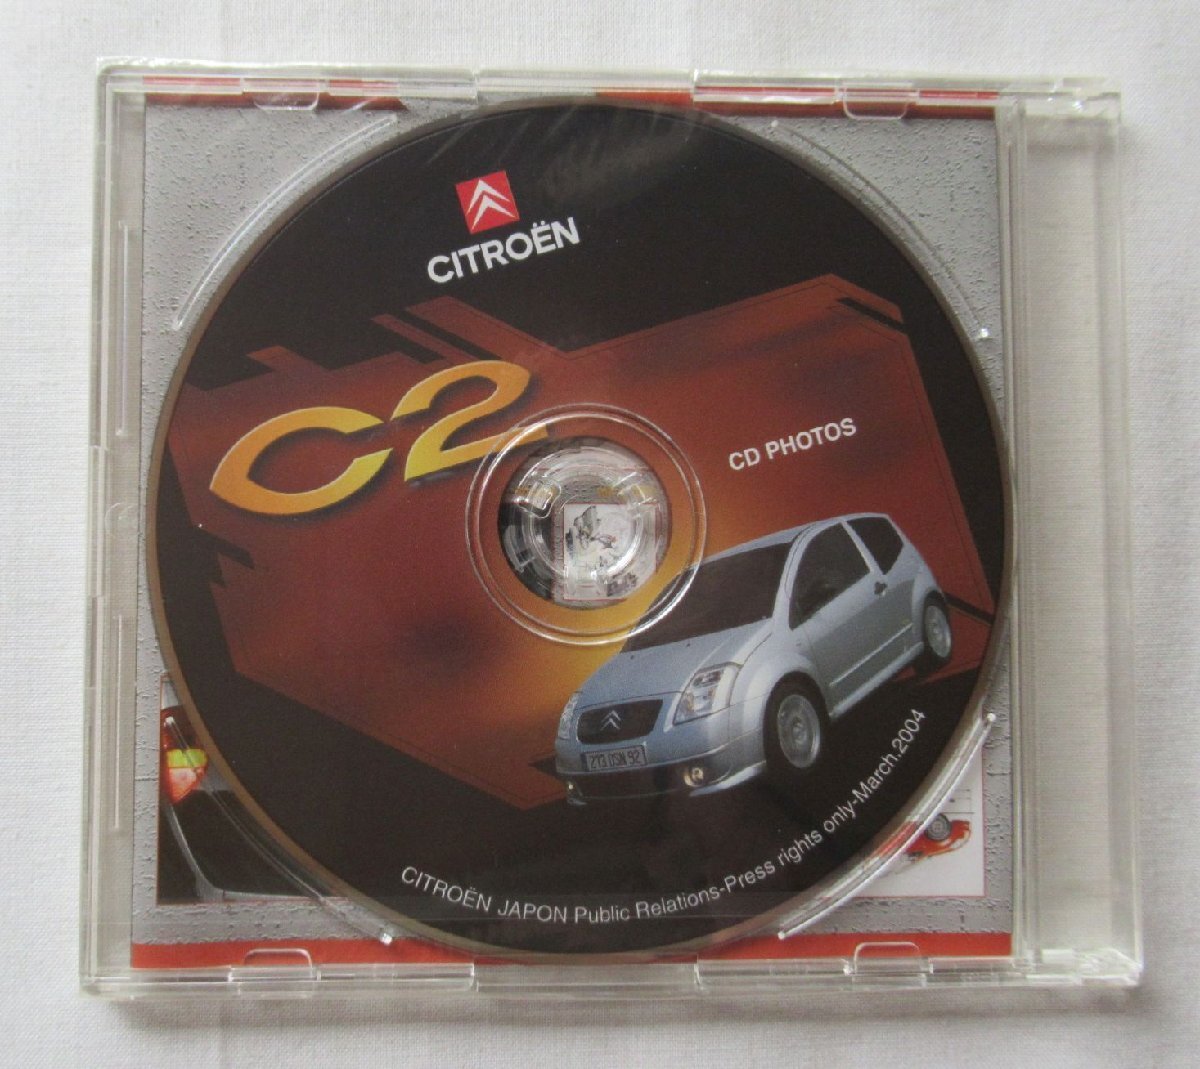 *[A60201* Citroen C2 Press Release ] 2004 год 3 месяц 18 день CITROEN нераспечатанный PHOTO CD имеется. специальный папка - ввод. *